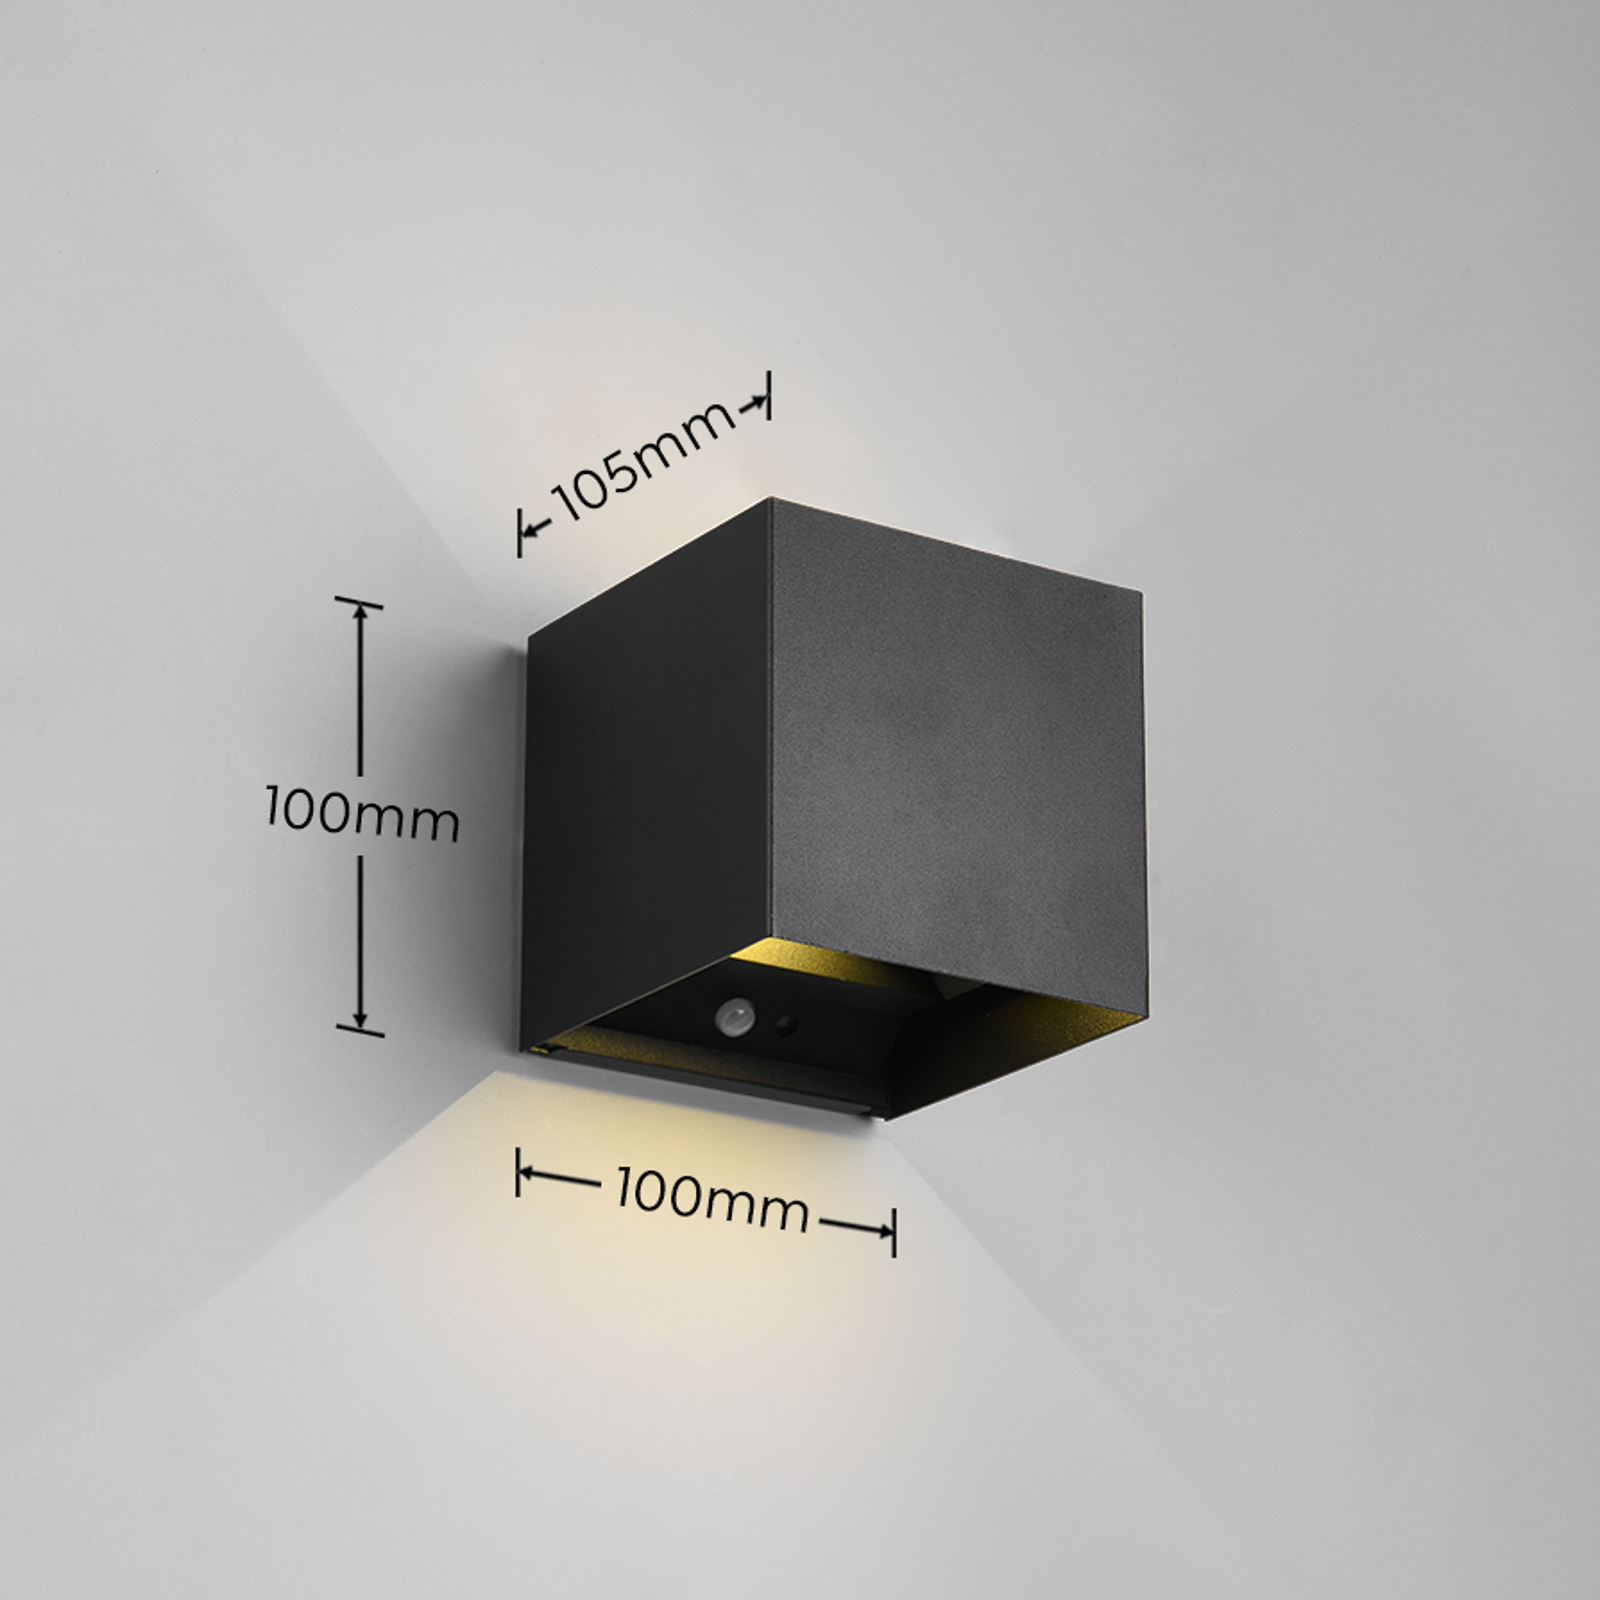 Talent LED vanjska zidna lampa na baterije, crna, senzor širine 10 cm